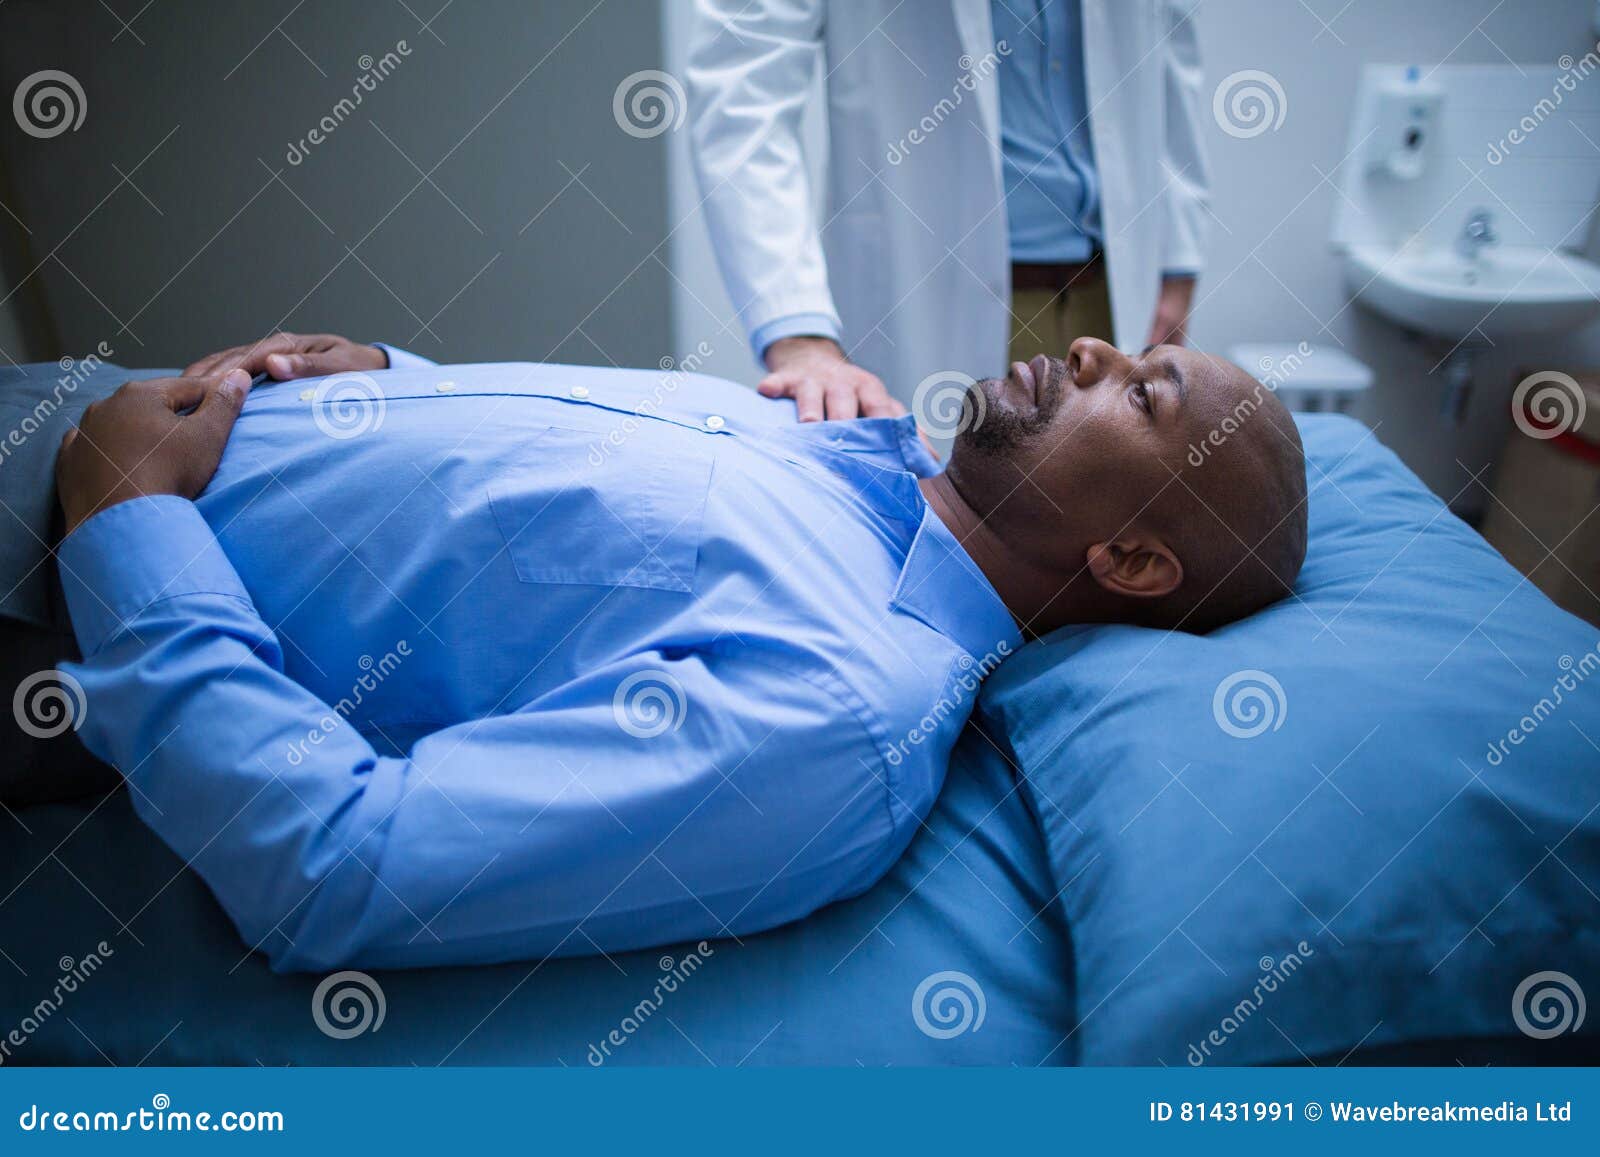 Сон врач сказал. Доктор успокаивает пациента. Врач утешает больного. Фото успокоить пациента. Пациент опирается на кровать.